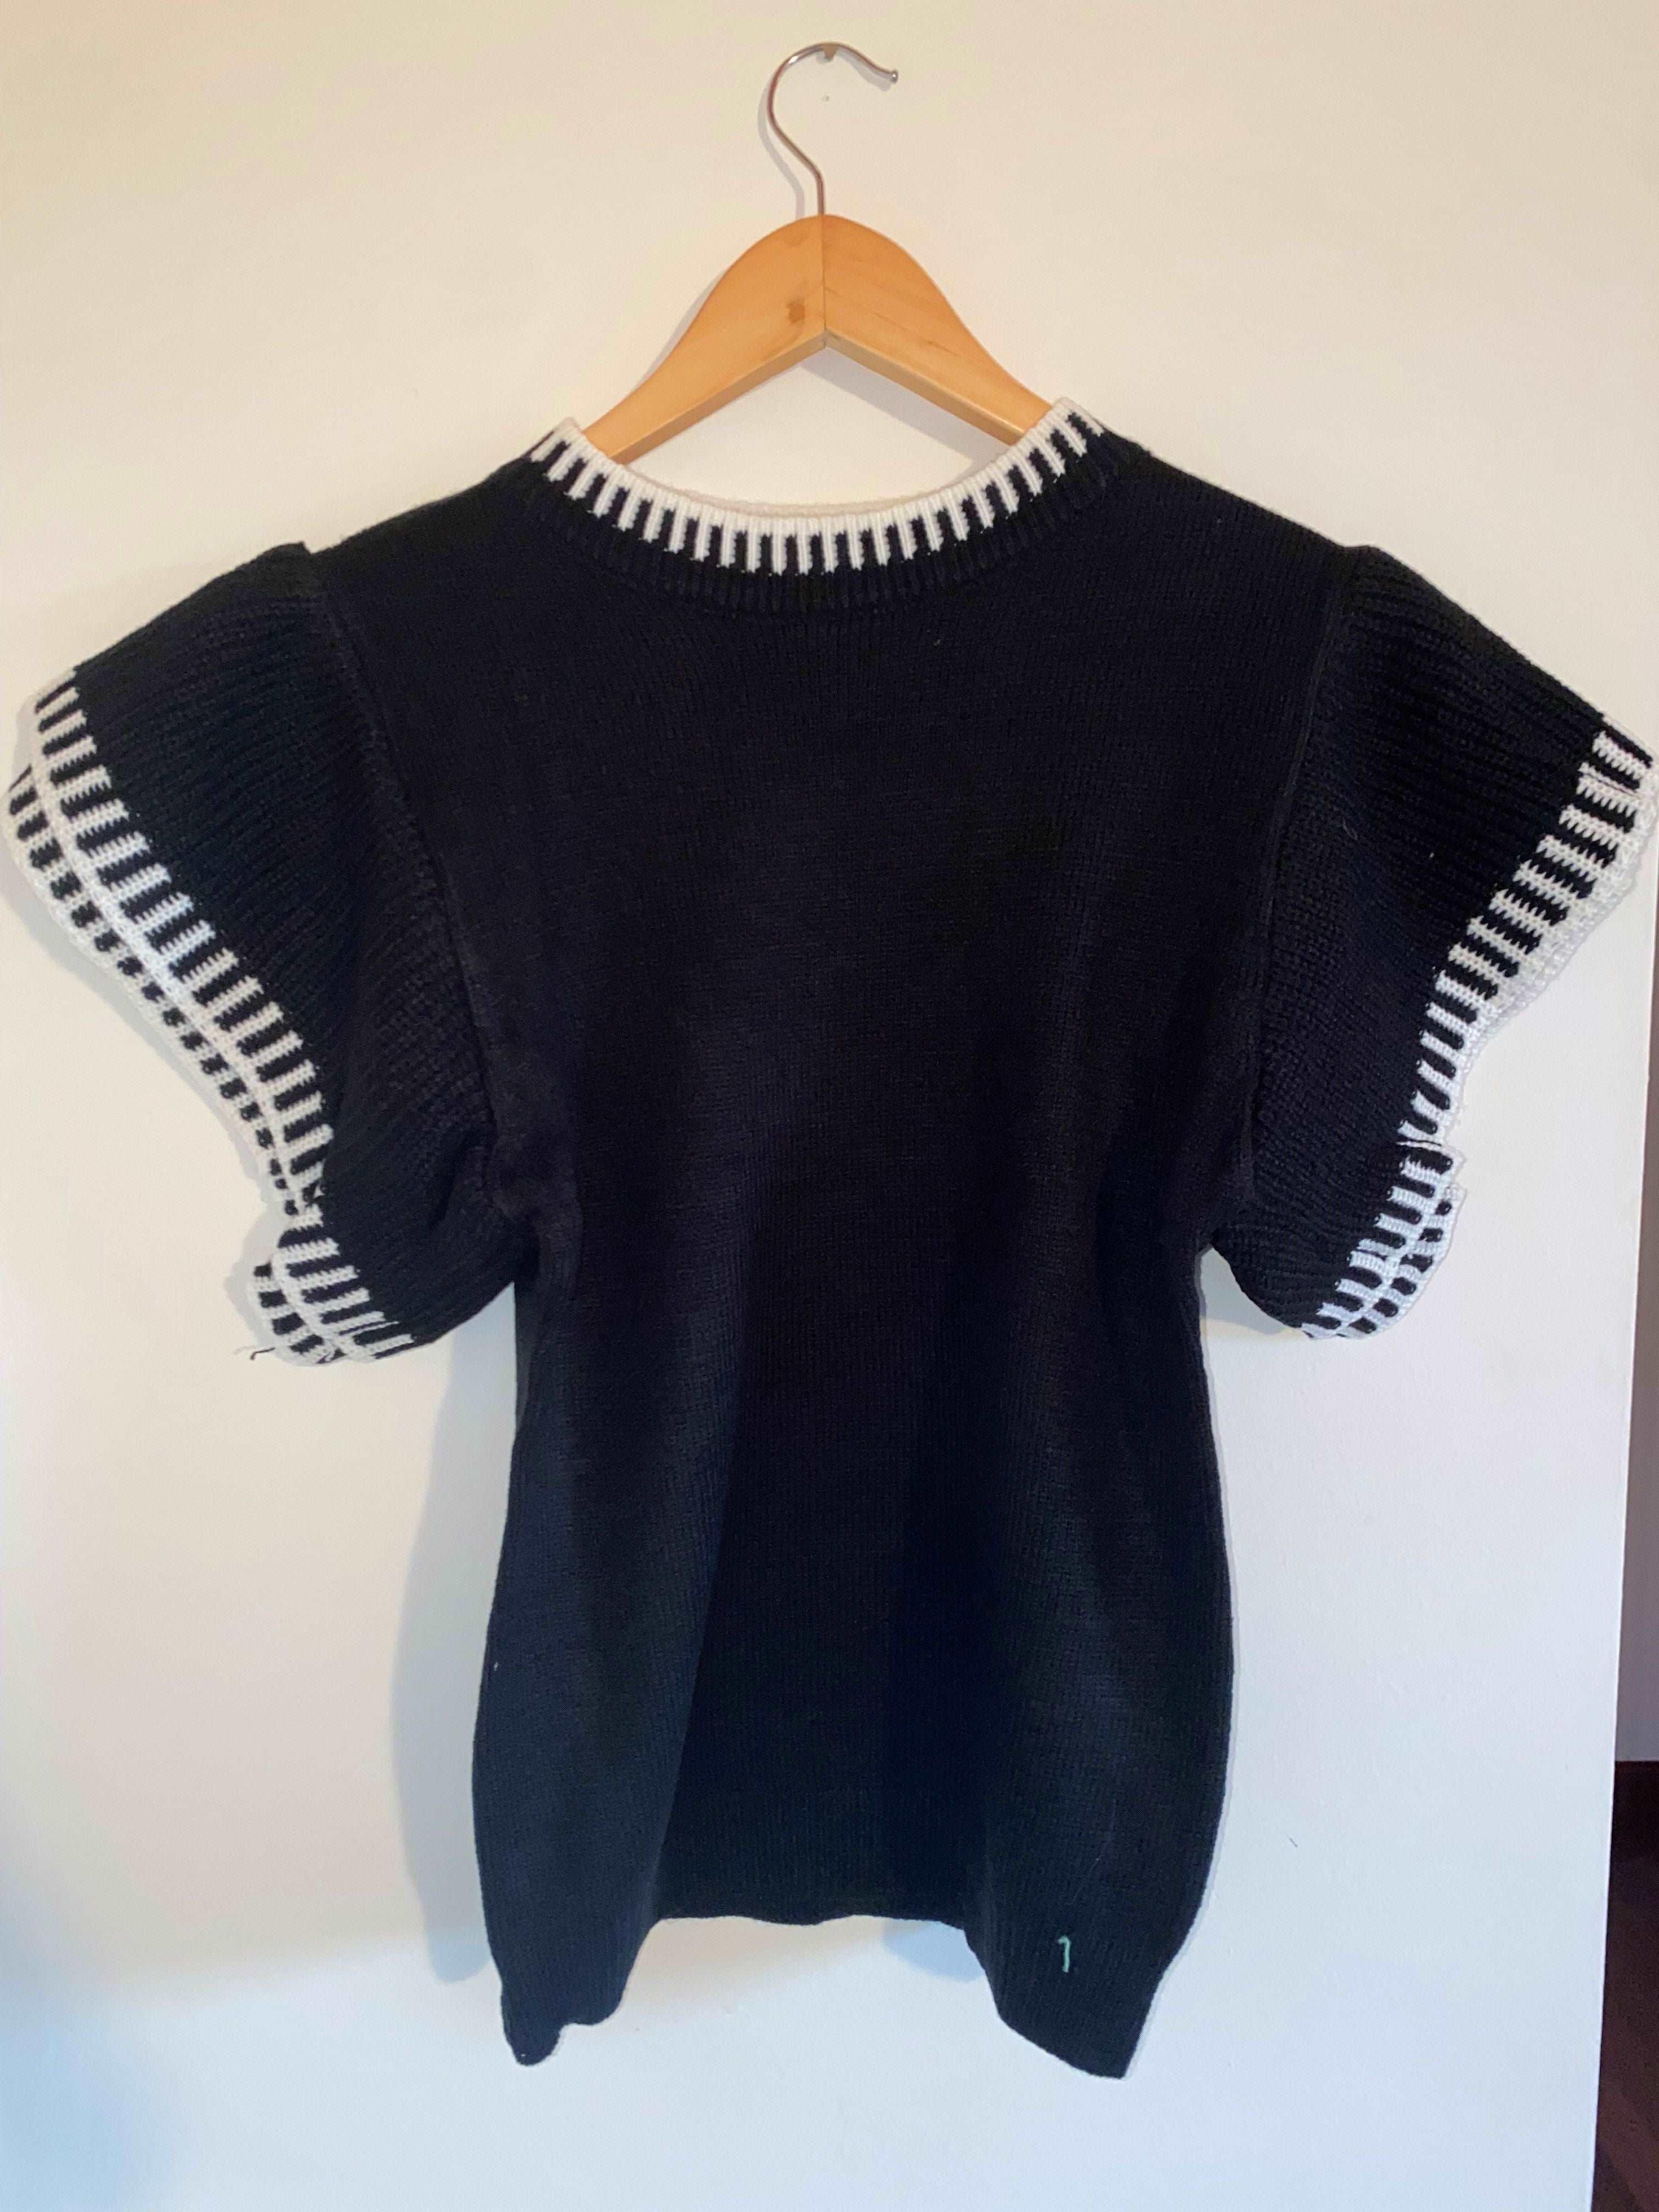 Black Knitted Jumper (SAMPLE SALE)